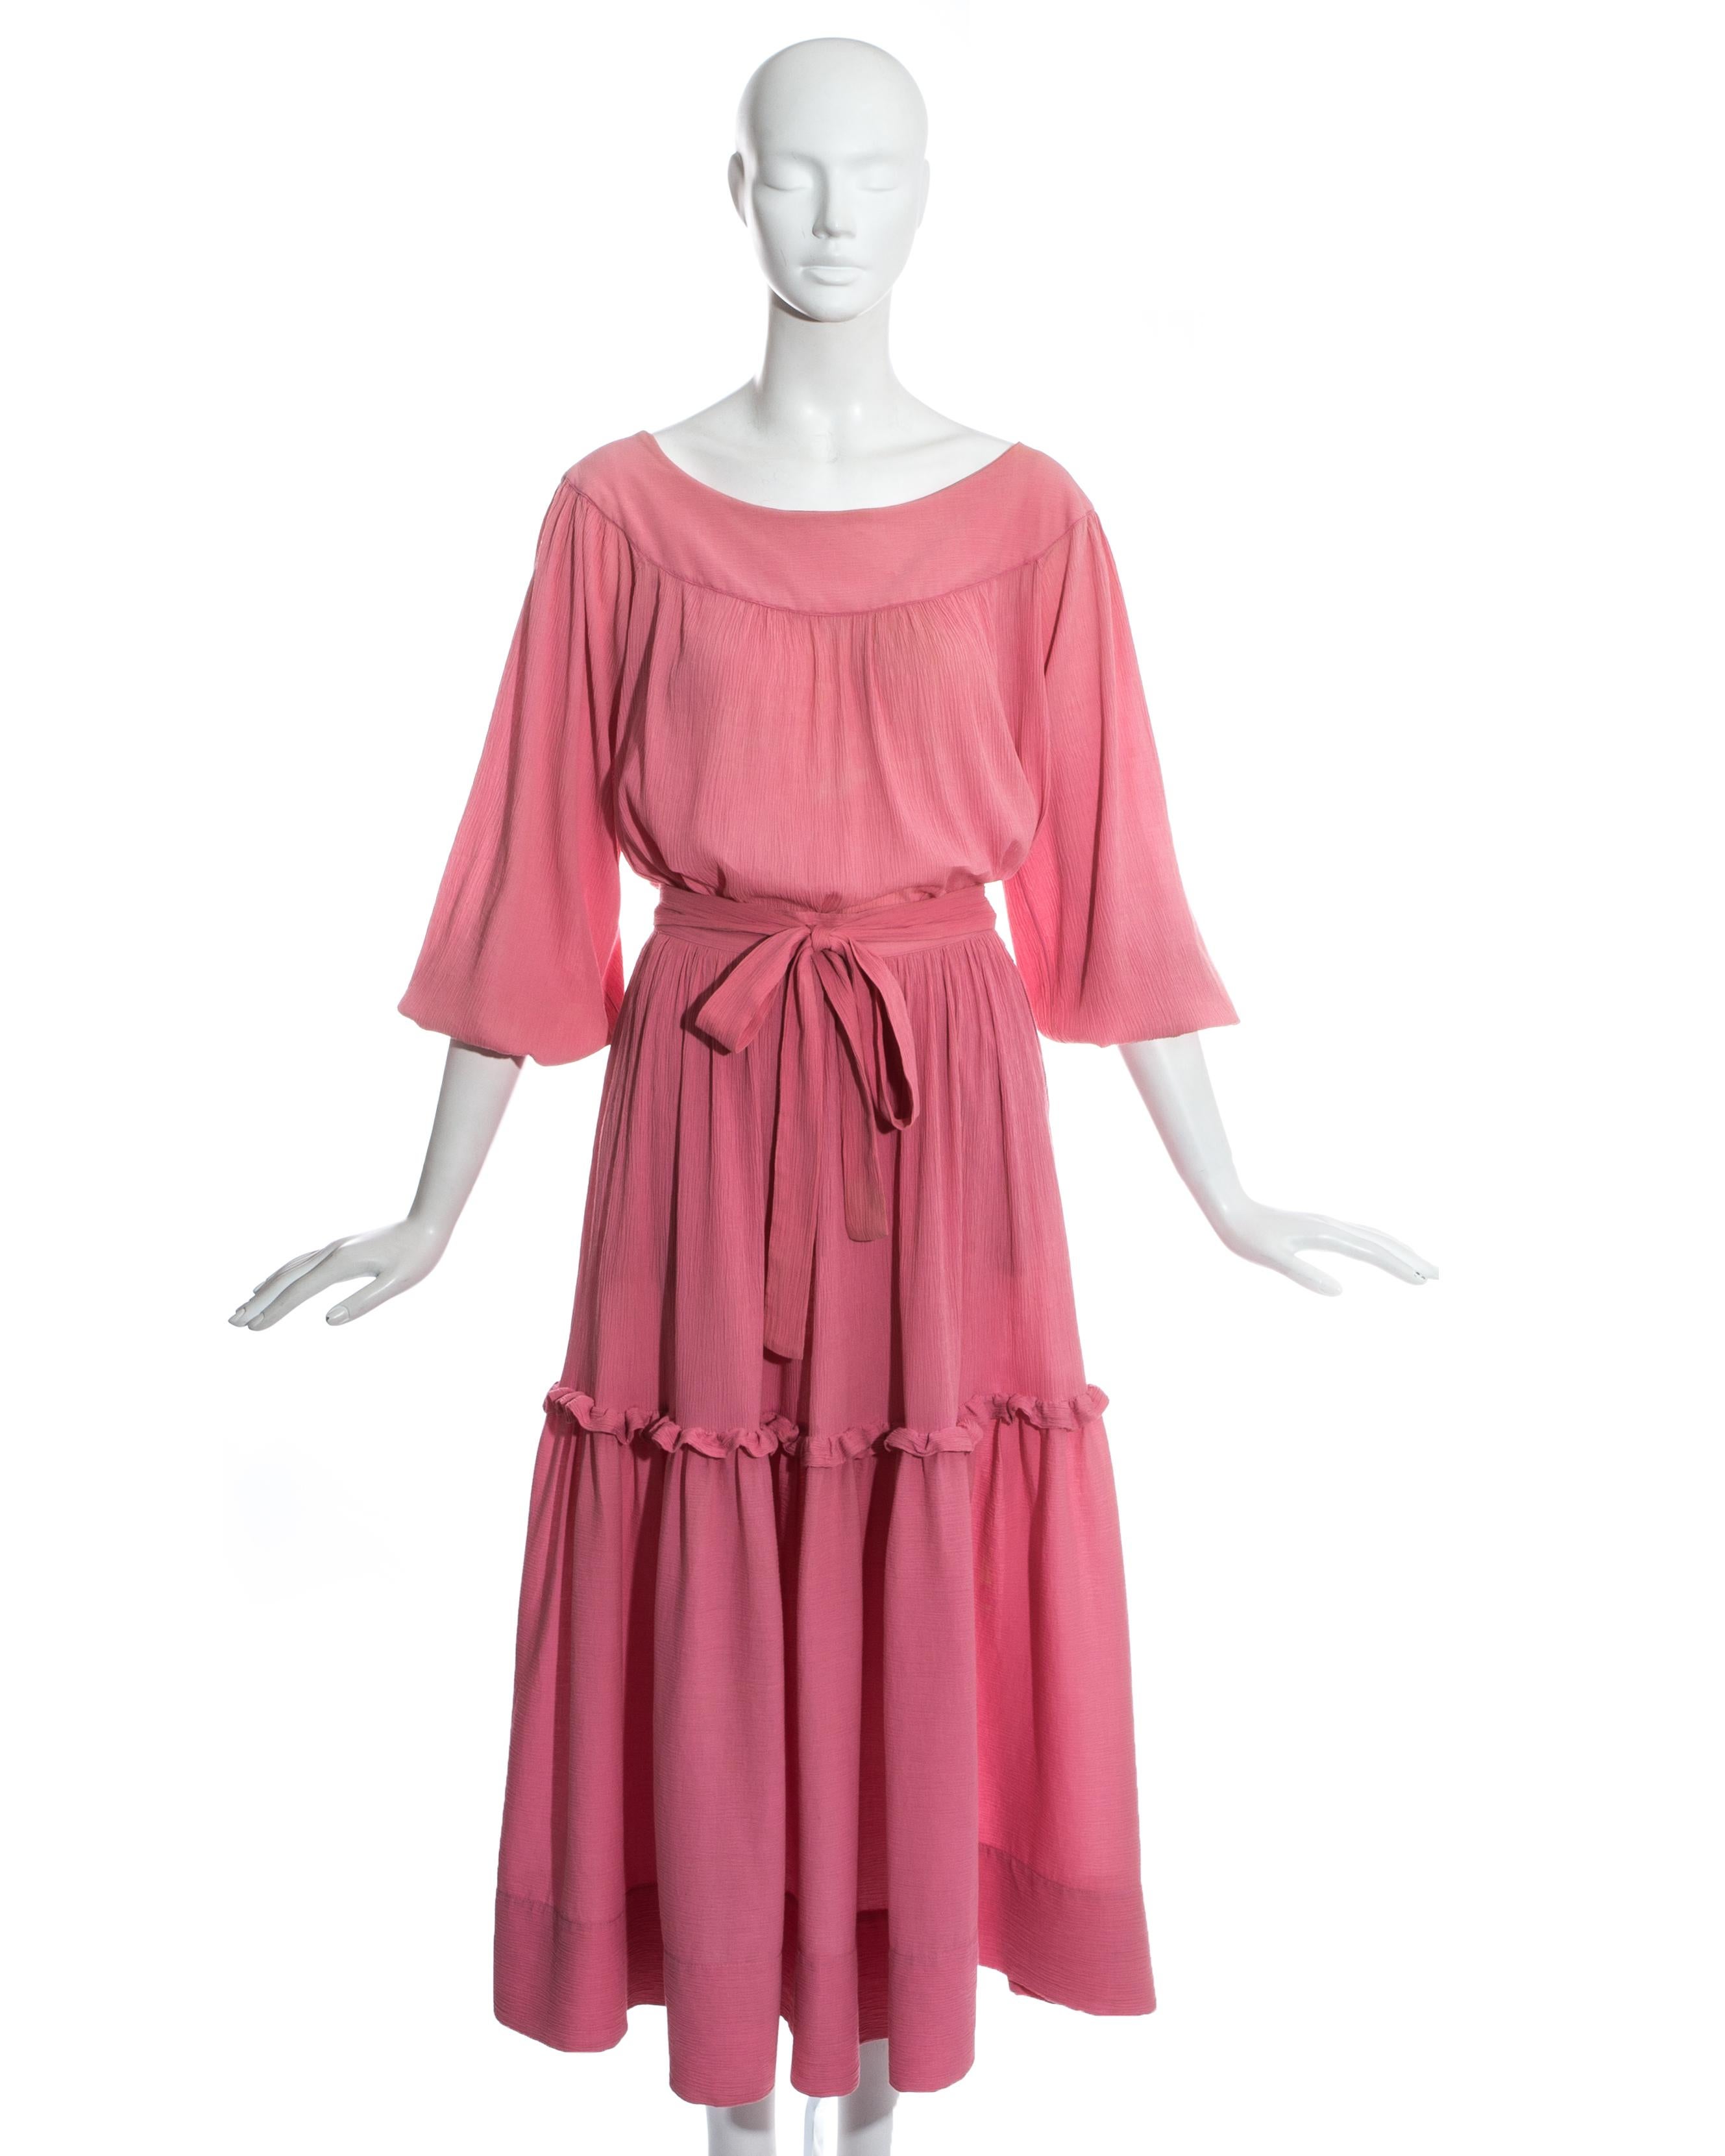 Yves Saint Laurent pink crinkled silk blouse and skirt set.

c. 1970s